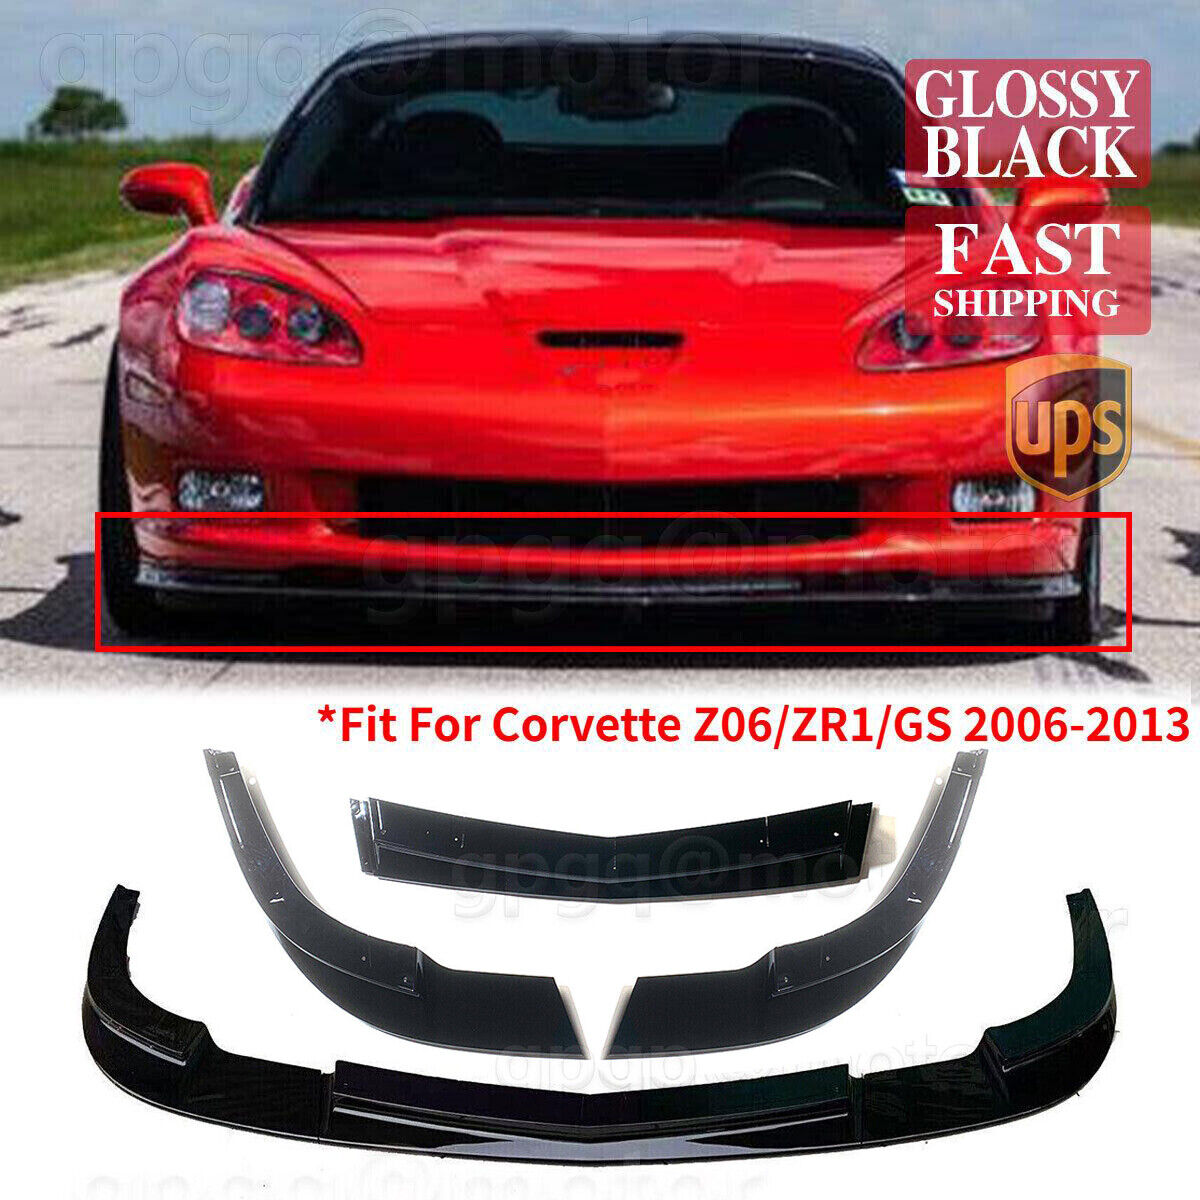 For Corvette C6 Z06 2005-2013 | ZR1 Style Glossy Black Front Bumper Splitter Lip